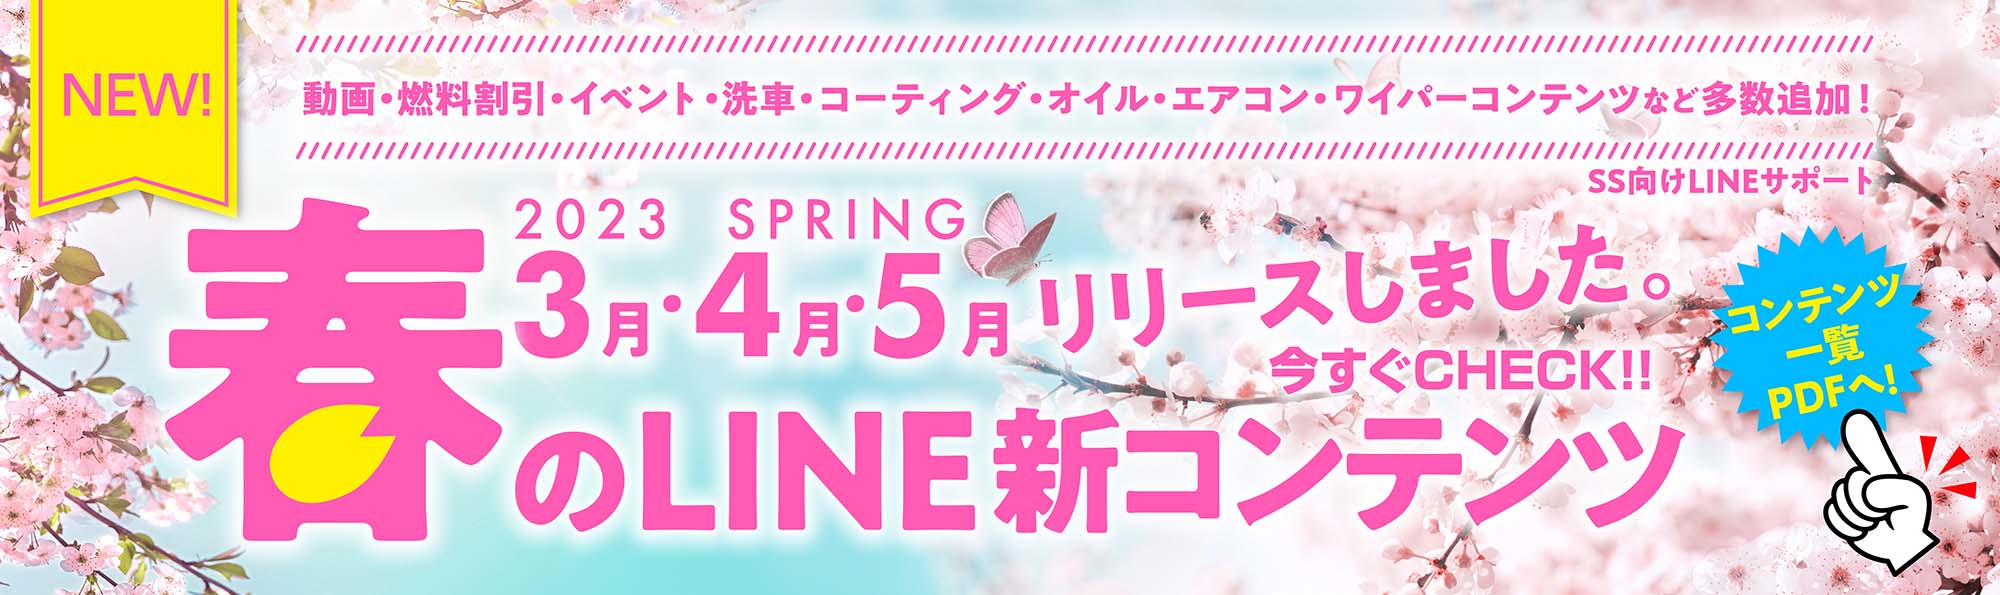 23春3月4月5月SS向けLINE新コンテンツ